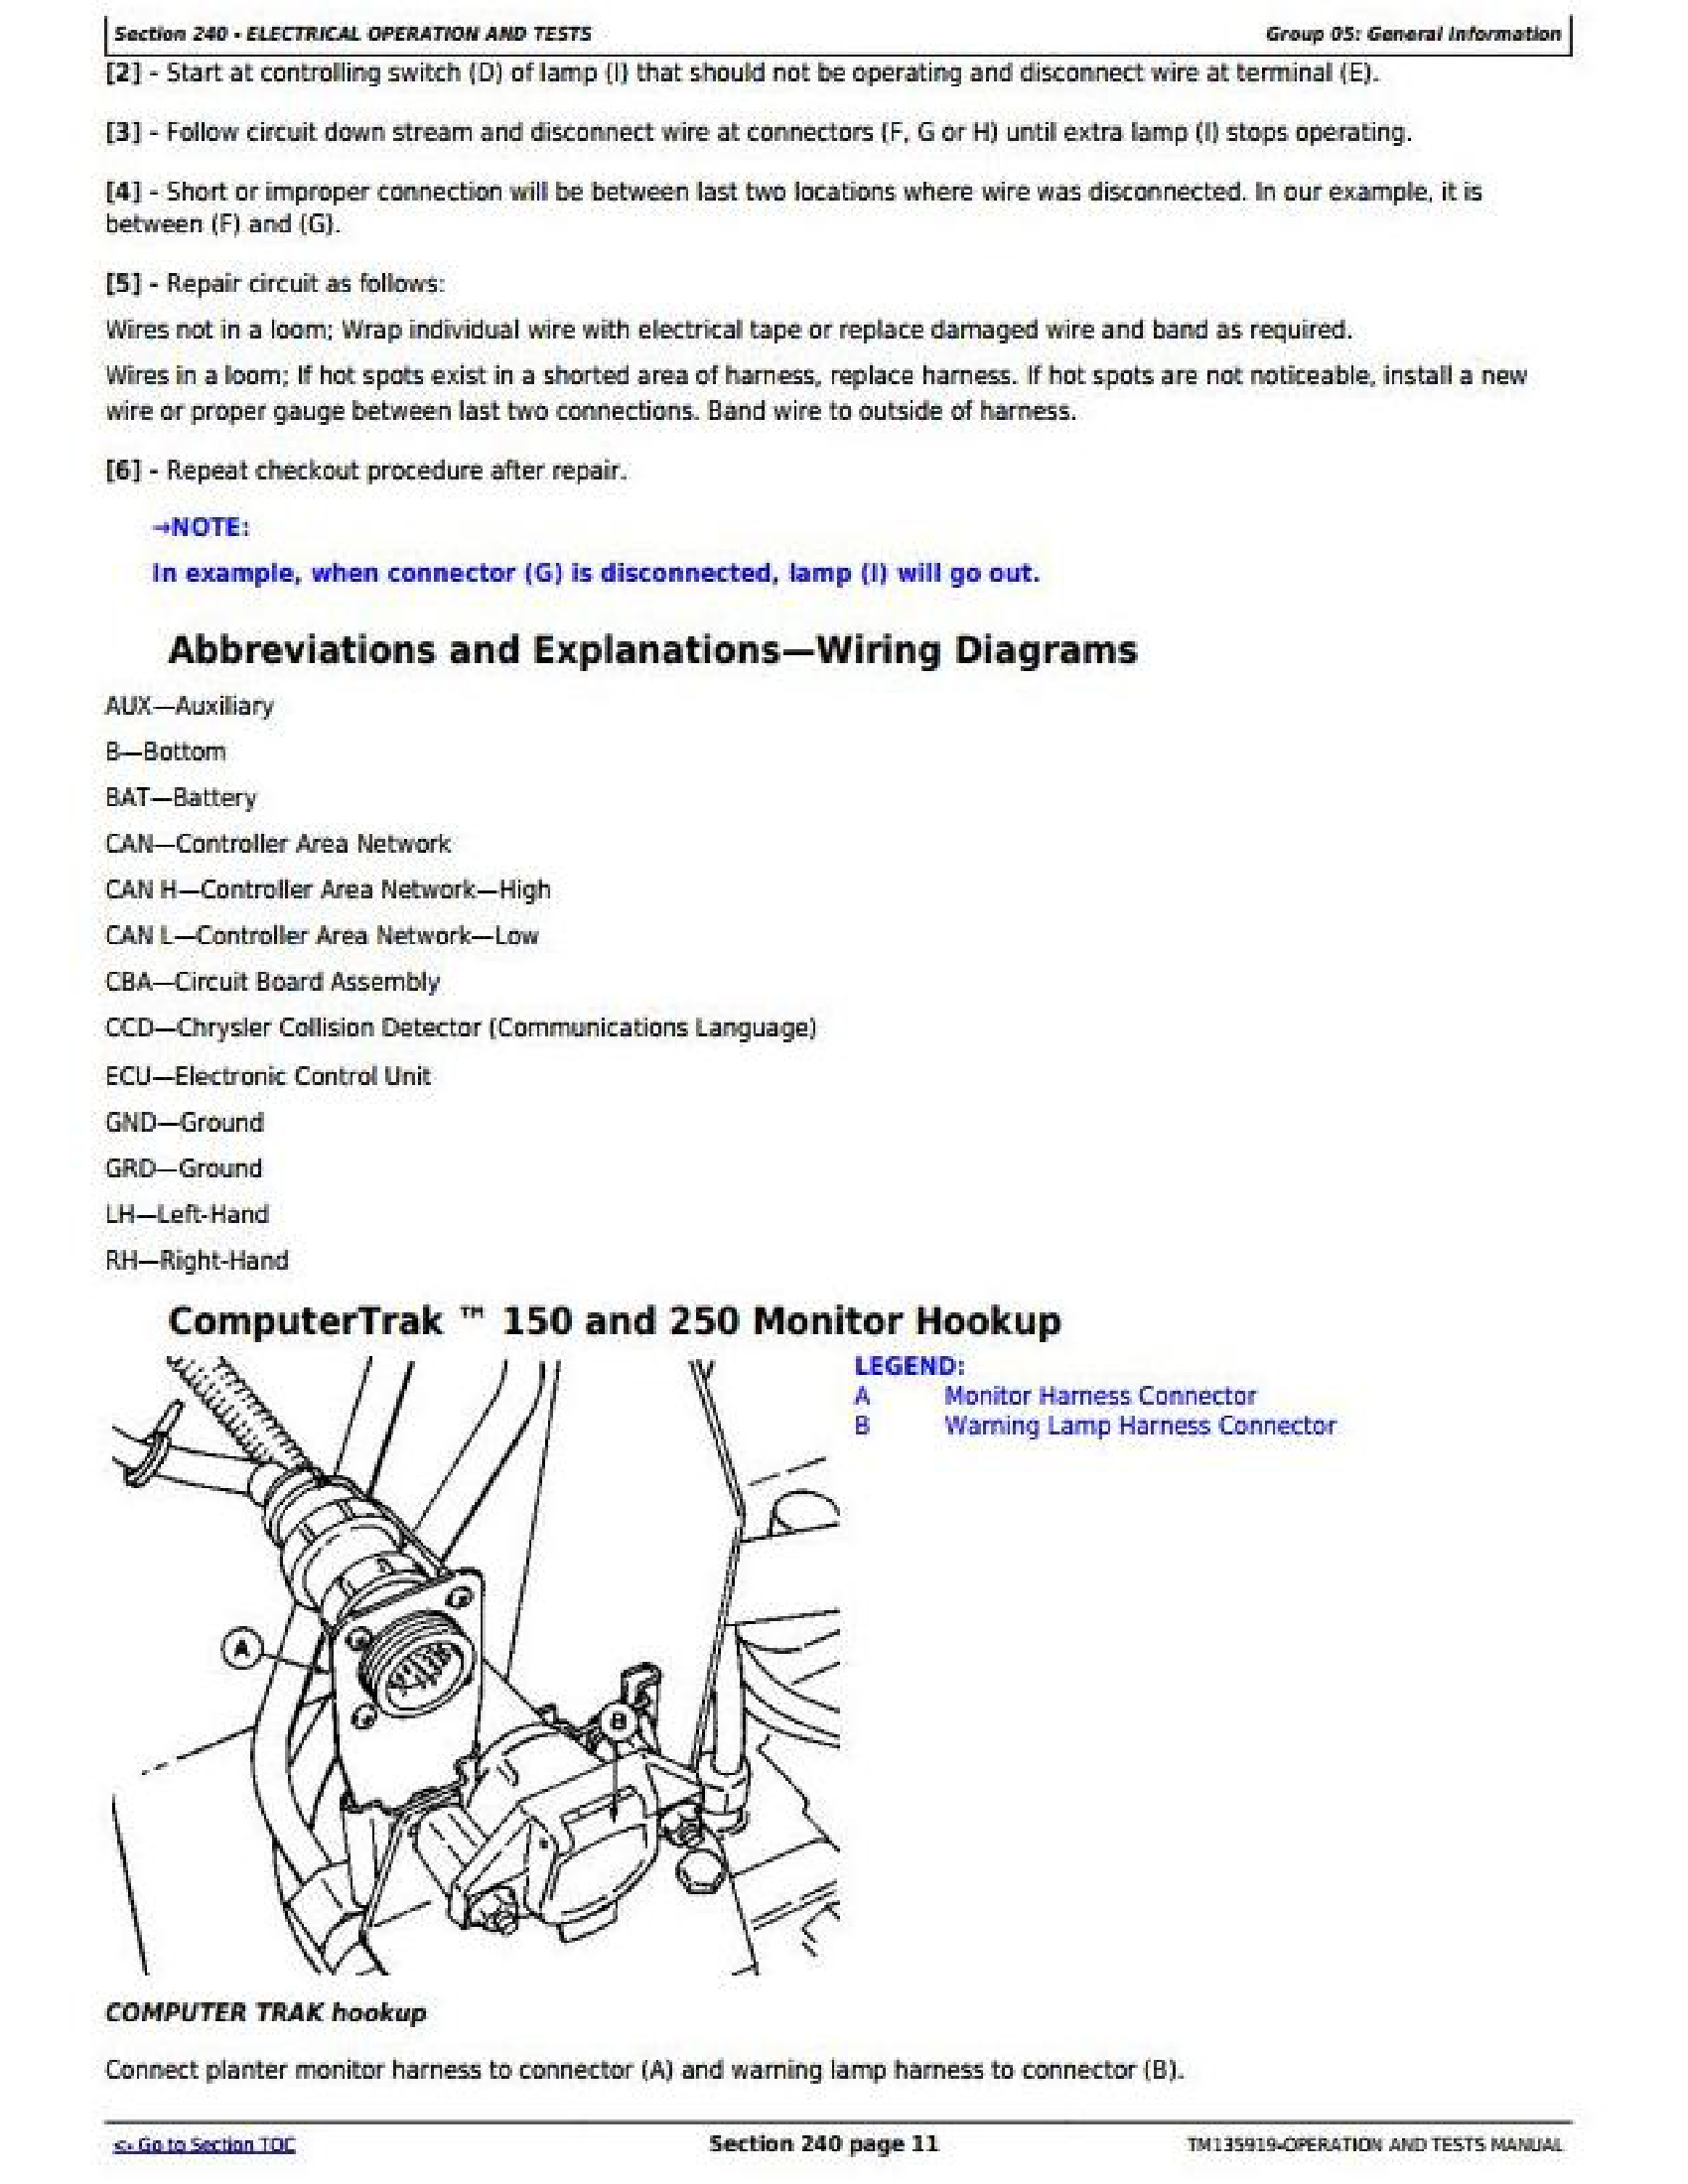 John Deere 1755 manual pdf